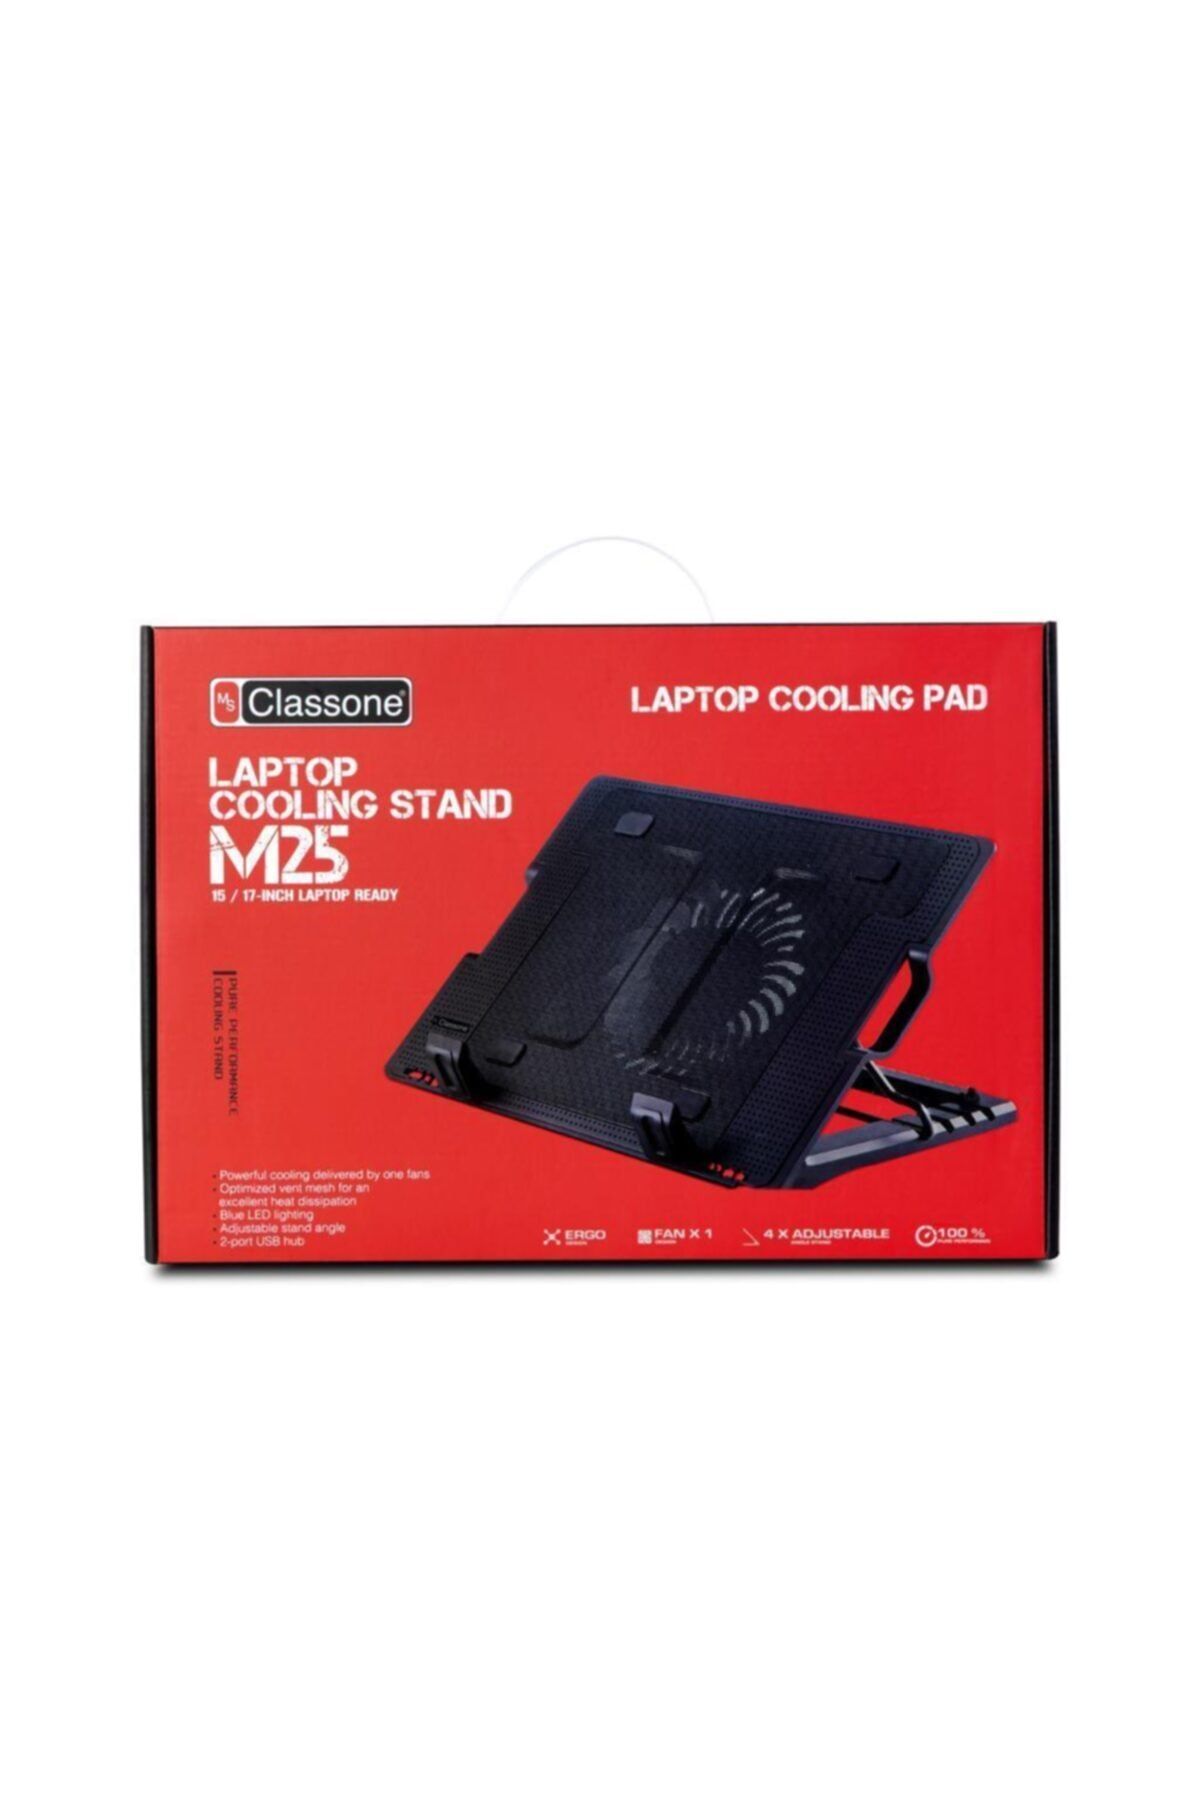 Classone M25 5x Yükseklik Ayarlı Notebook Soğutucu 10-17" Uyumlu